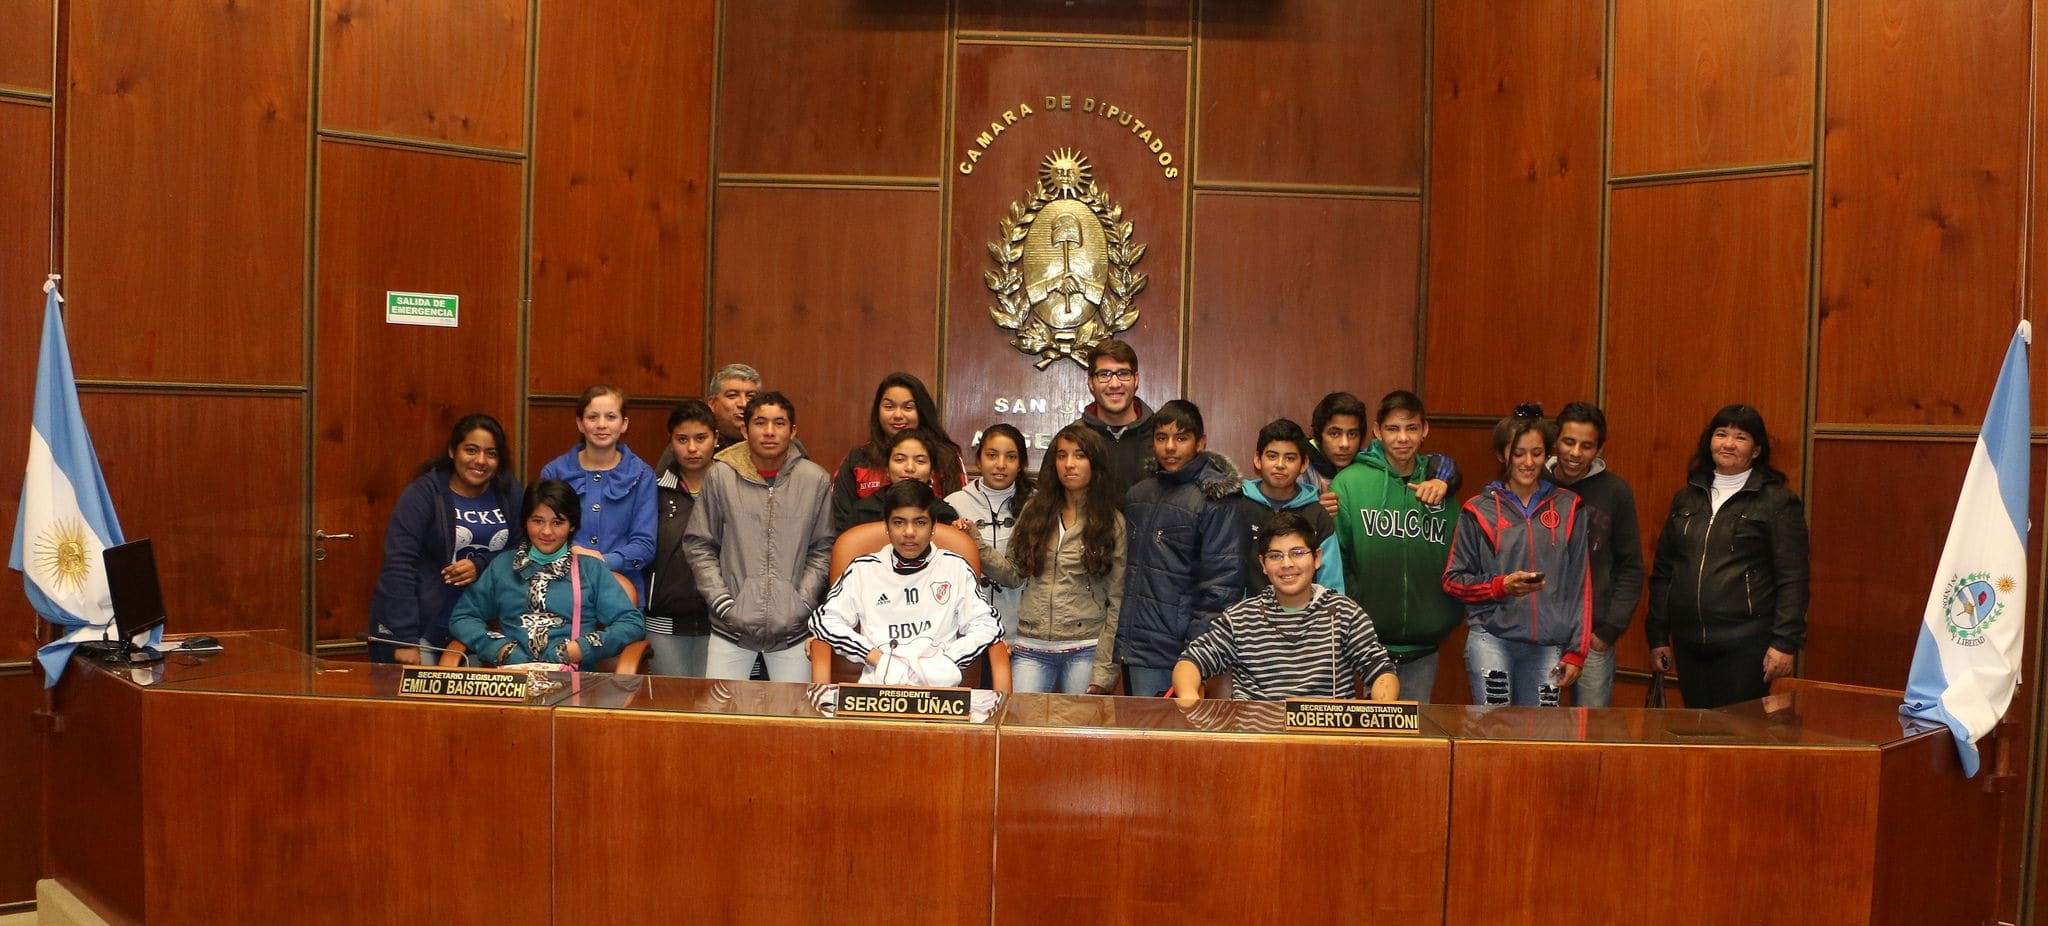 Alumnos y docentes de la escuela "Juan Ignacio Gorriti" presentes en la Legislatura.